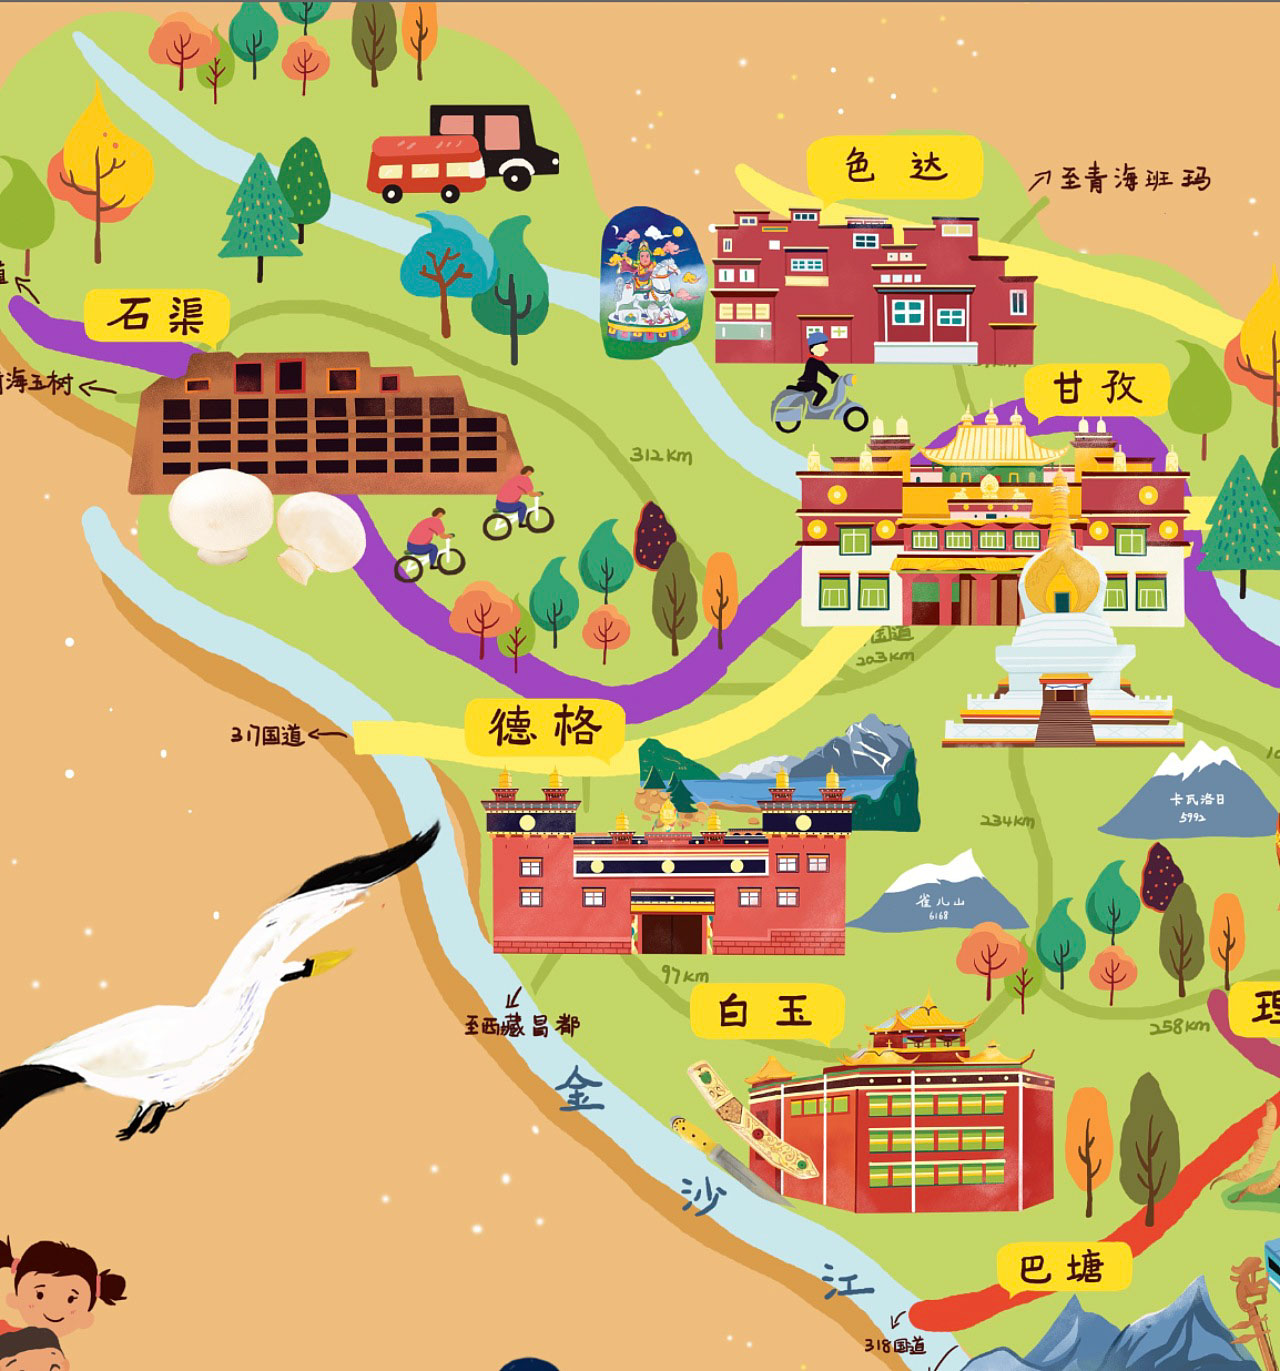 黄圃镇手绘地图景区的文化宝库